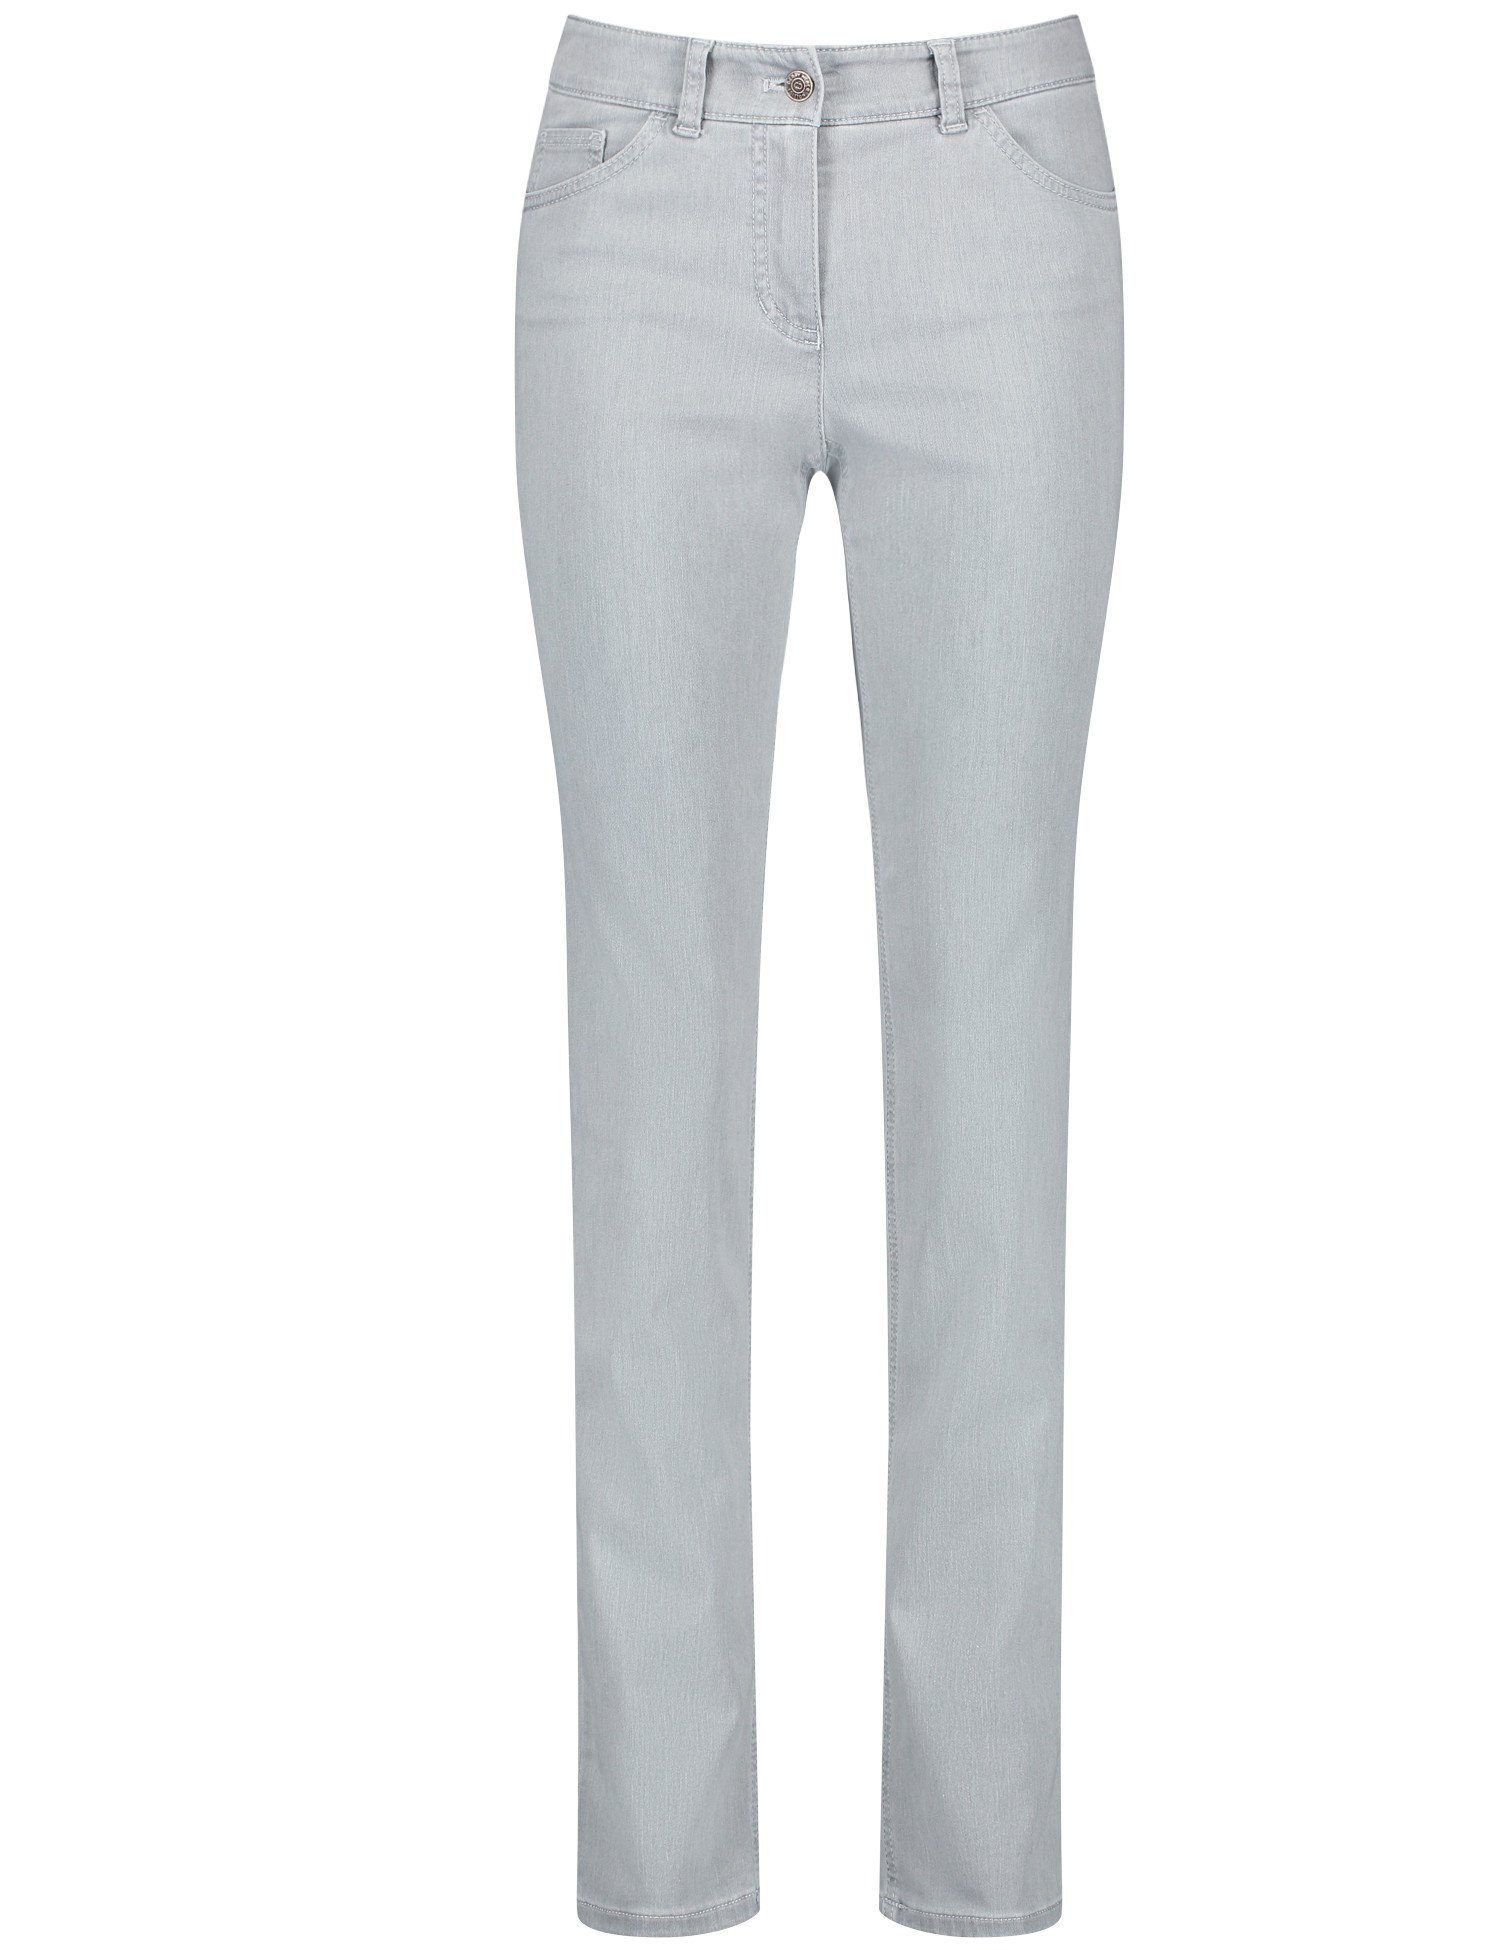 GERRY WEBER Slim-fit-Jeans 5-pocket Hose Slim Fit light grey denim